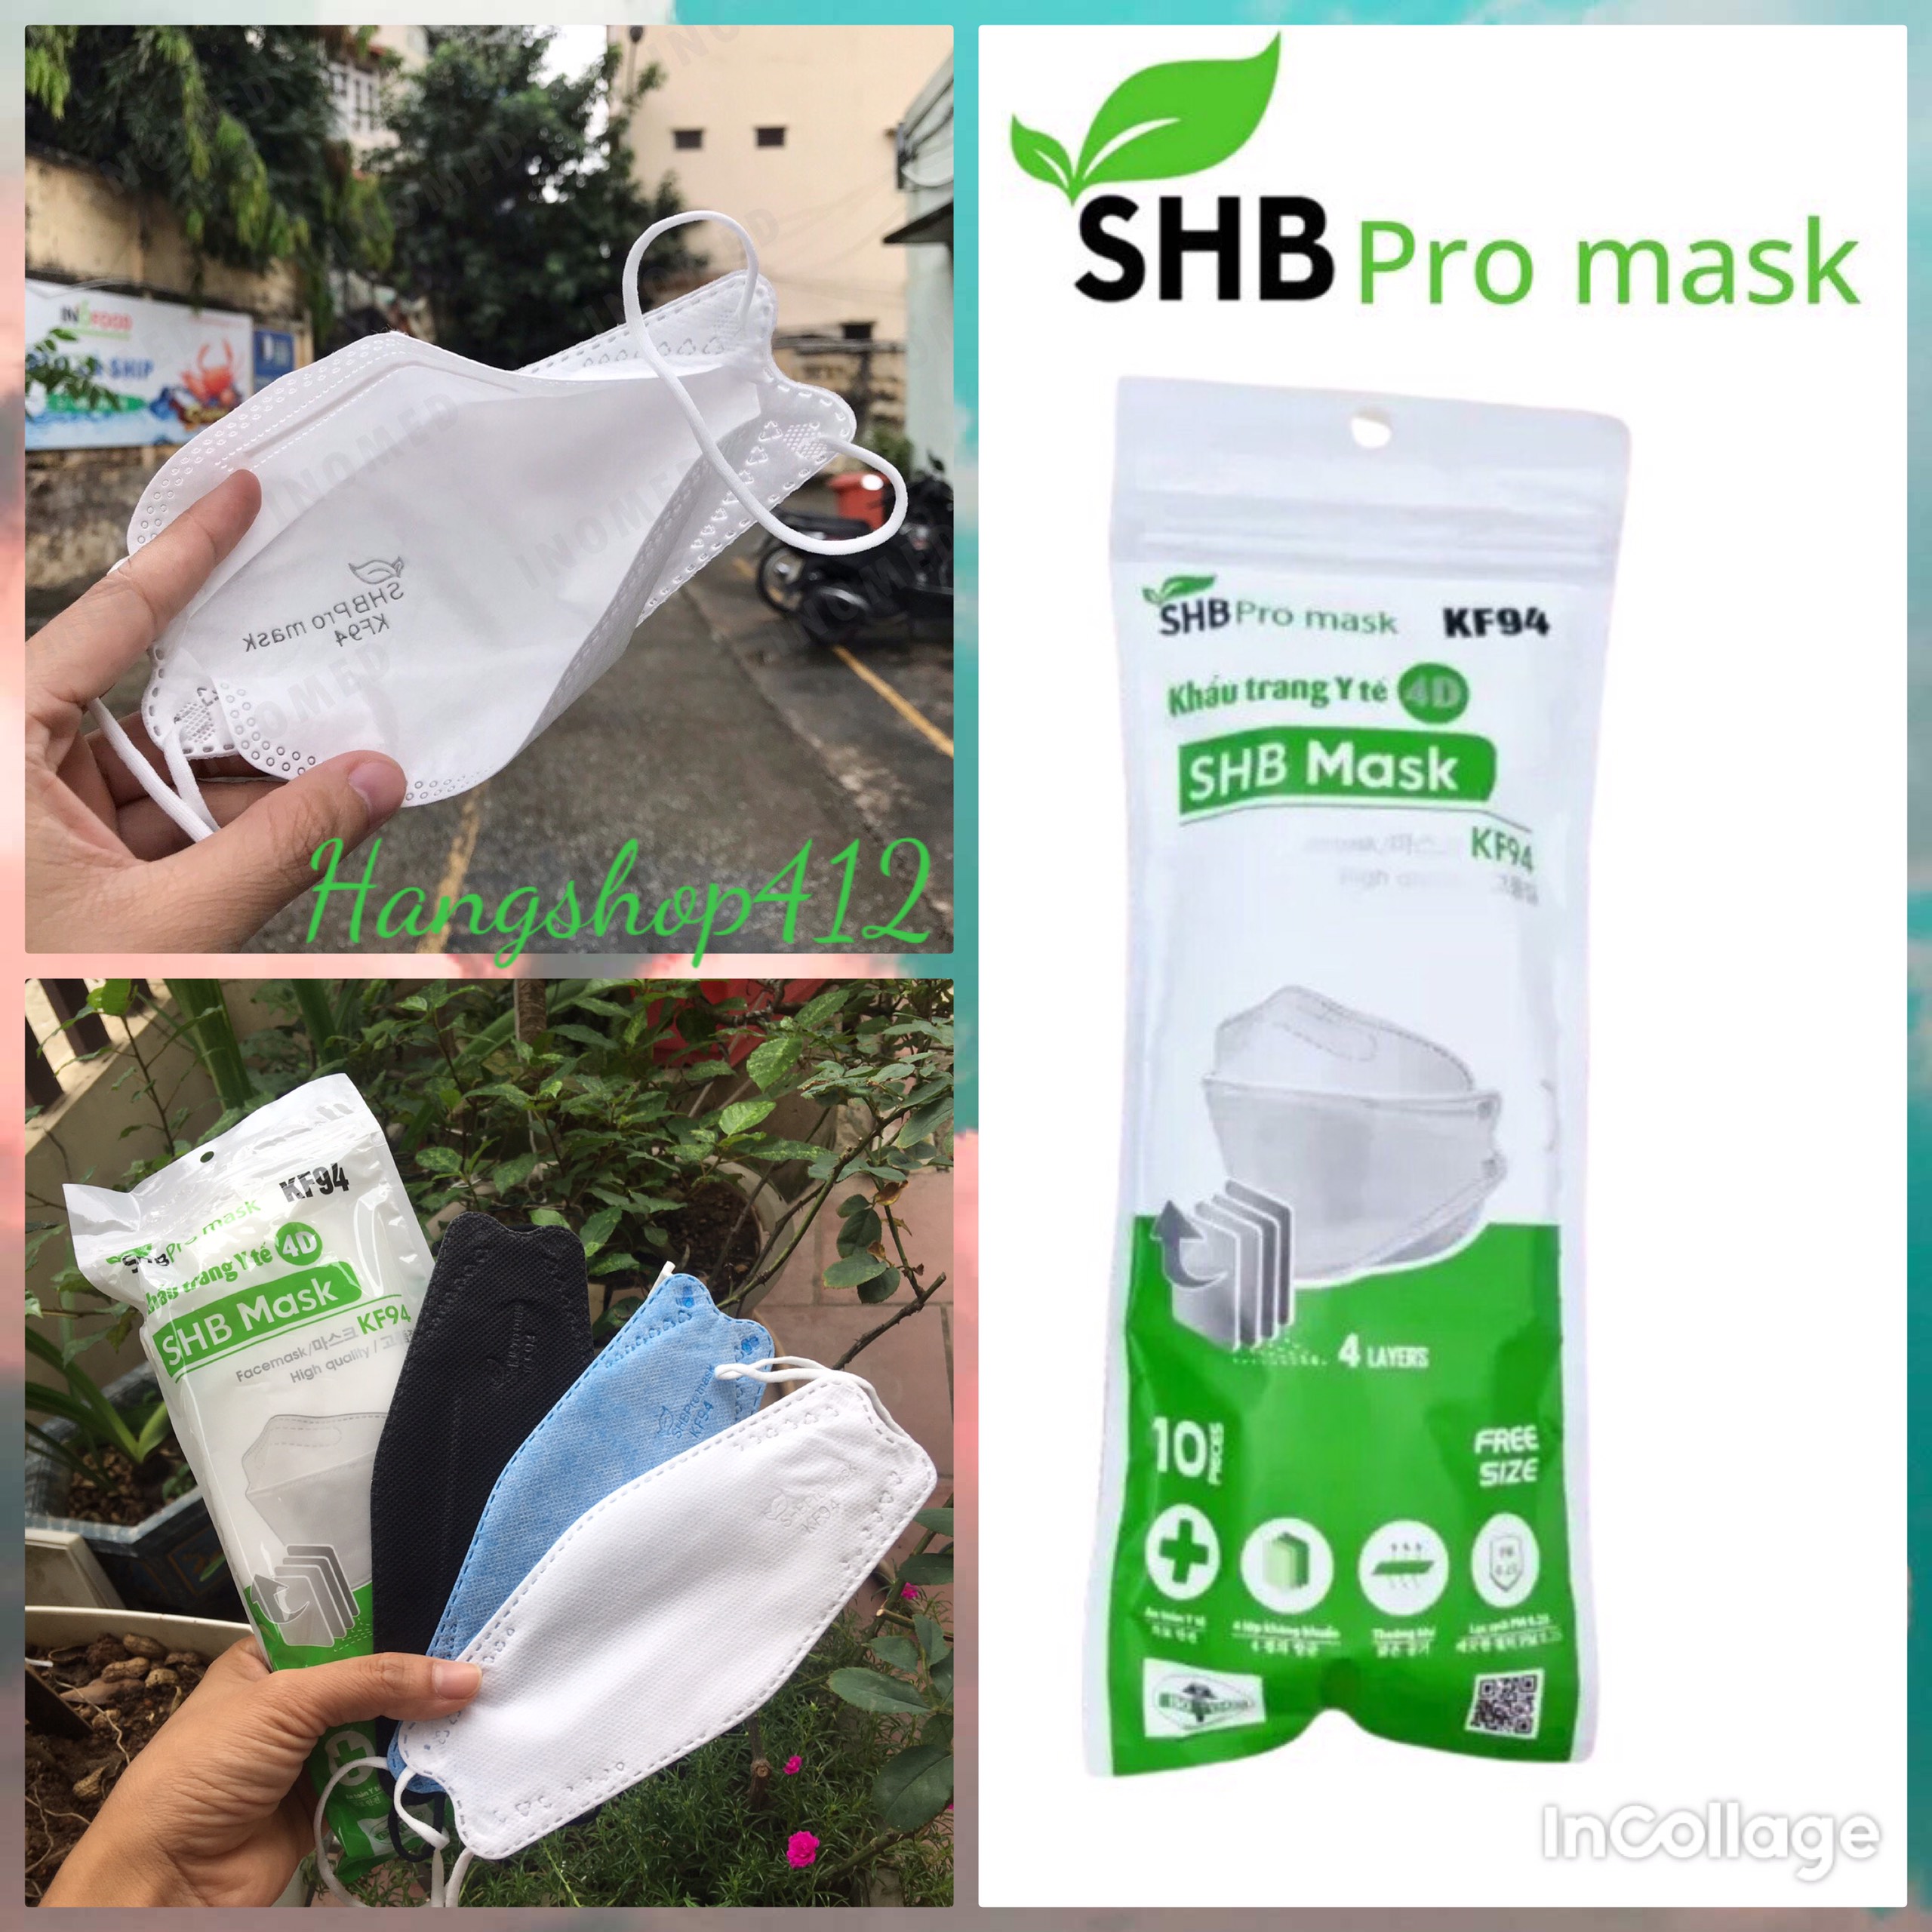 Túi 10 chiếc Khẩu trang kf94 SHB pro mask chính hãng ( Chọn Màu ), khẩu trang  y tế 4d mask 4 lớp kháng khuẩn bịch 10 cái